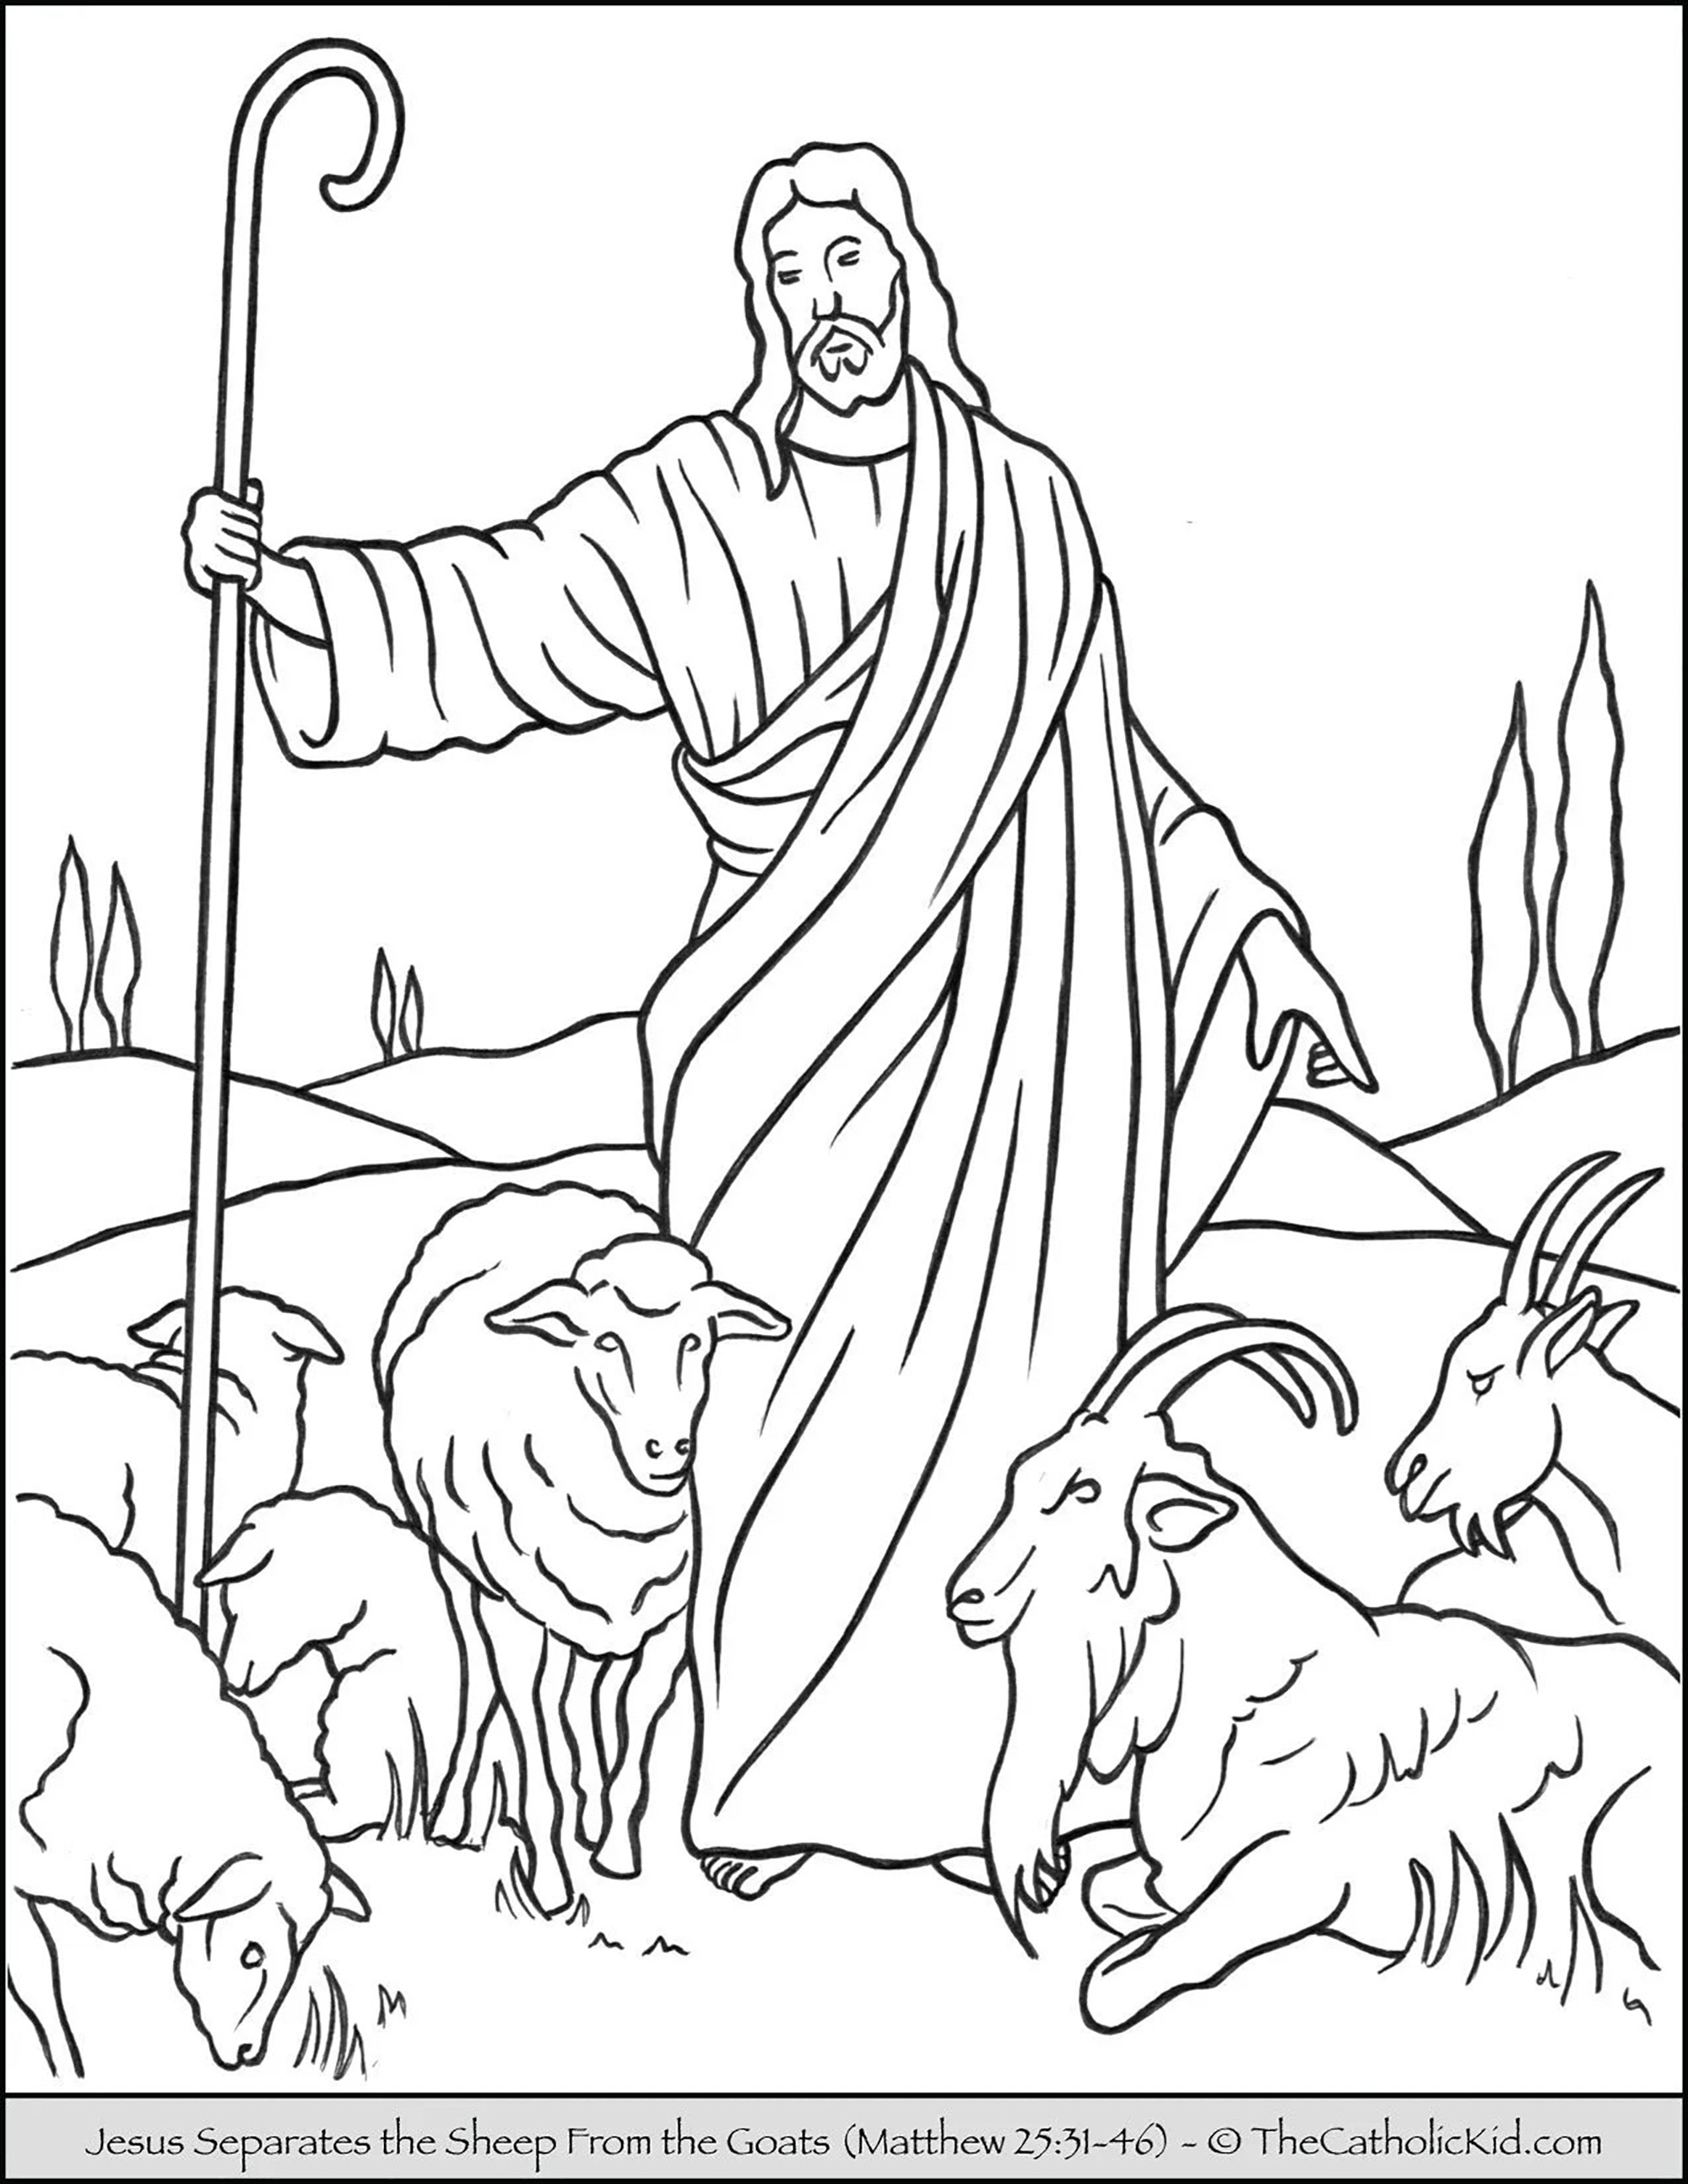 Jesús separa las ovejas de las cabras. Esta parábola se refiere al tiempo del juicio. Las ovejas simbolizan a los que siguen y obedecen a Cristo, mientras que las cabras representan a los que han optado por no seguir a Jesús y su ejemplo en la tierra (un testimonio).